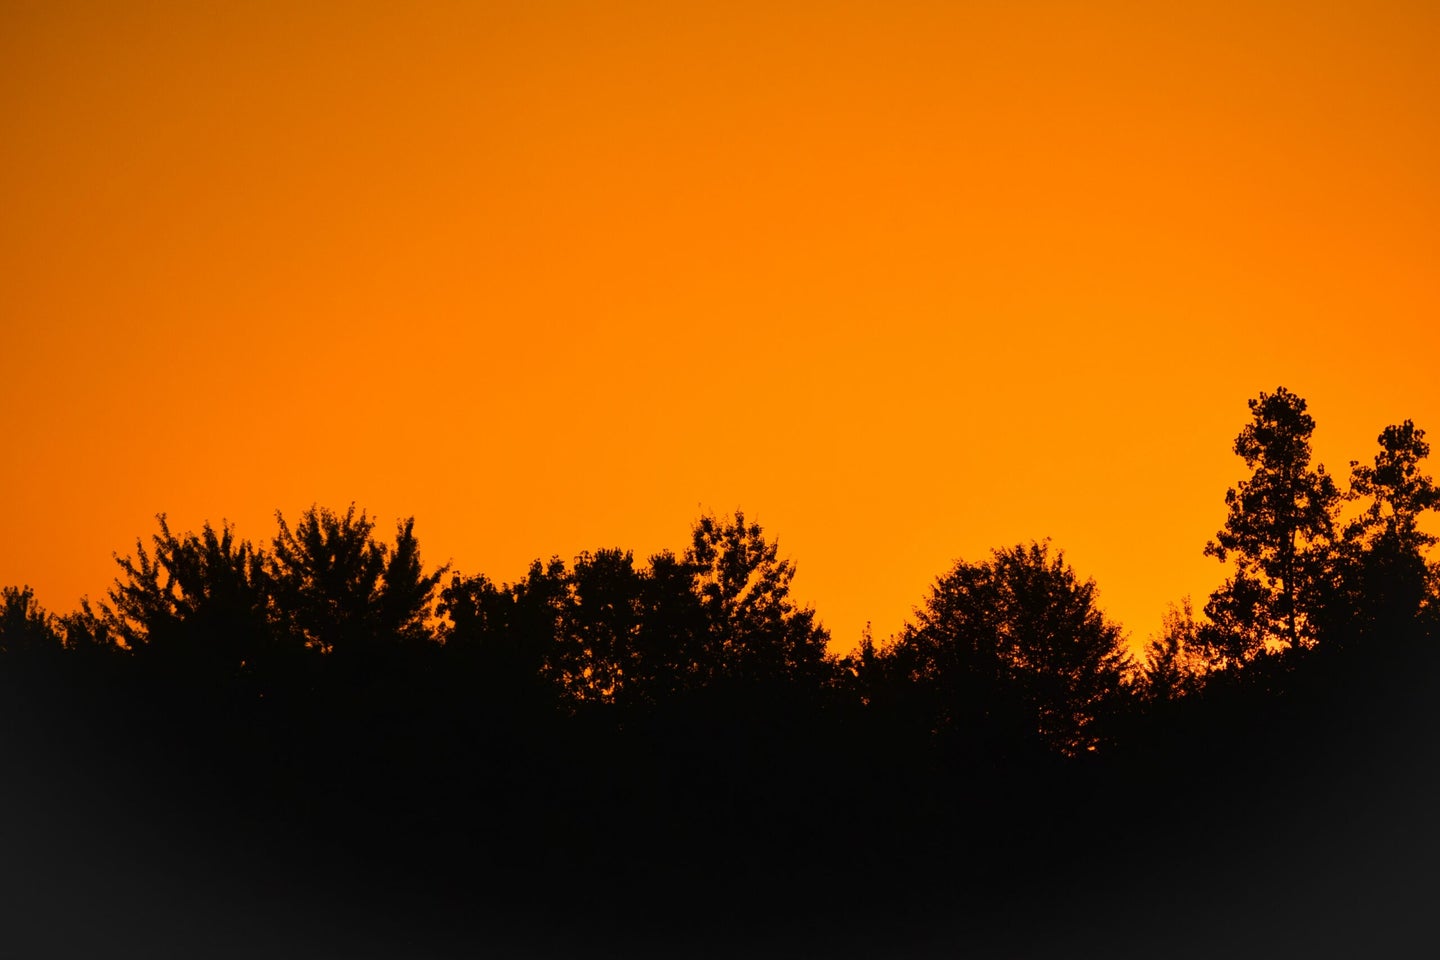 orange sky